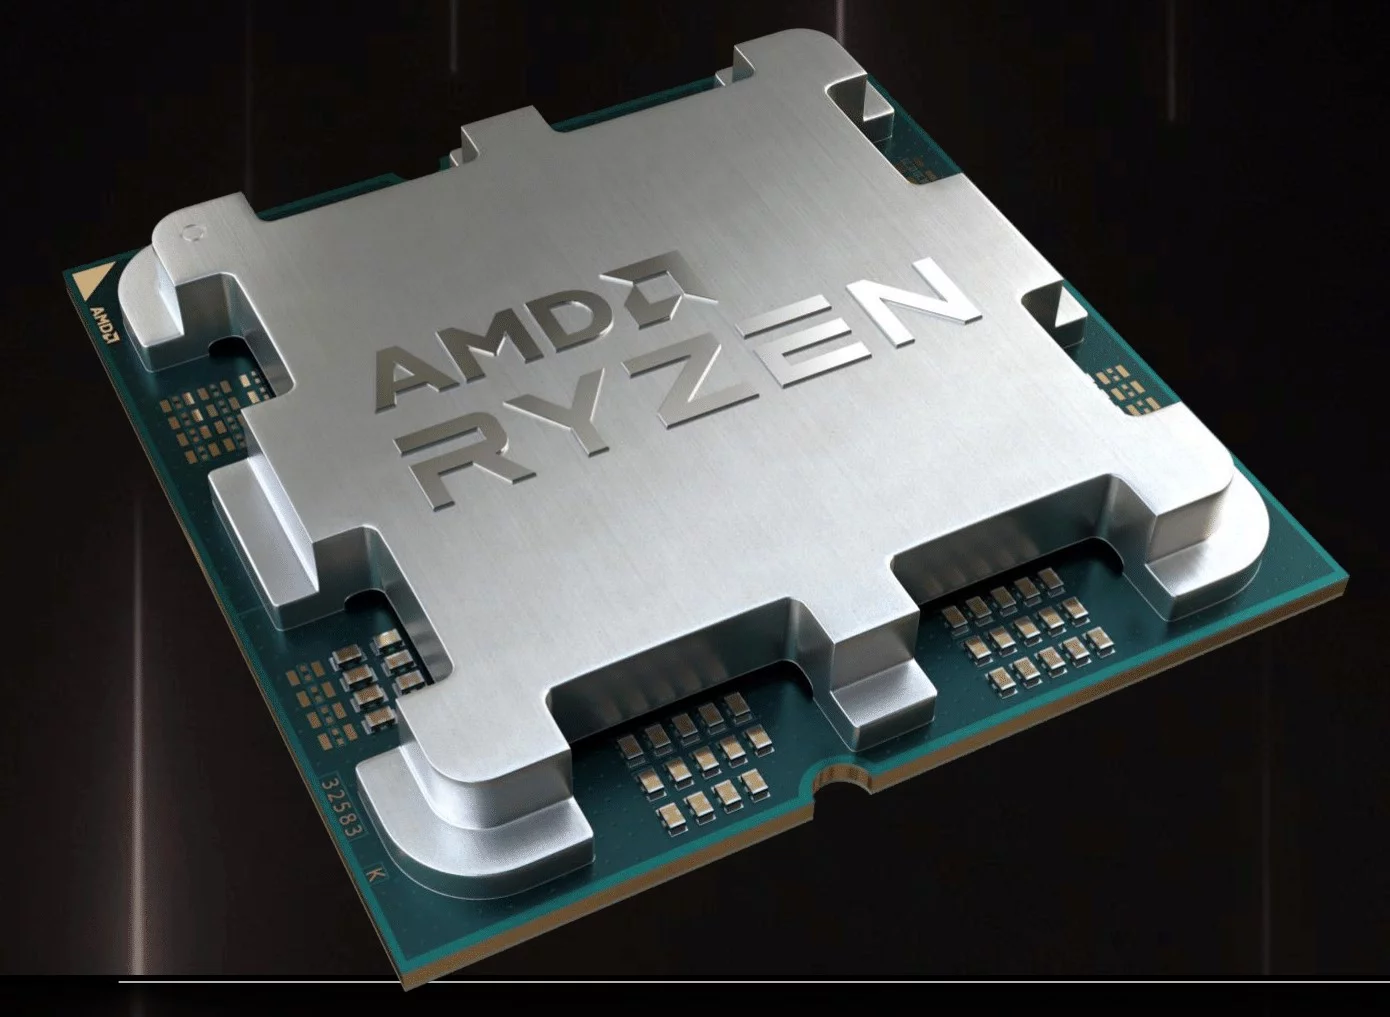 AMD trình làng Ryzen PRO 8000G Hawk Point dành cho khối người dùng là các doanh nghiệp